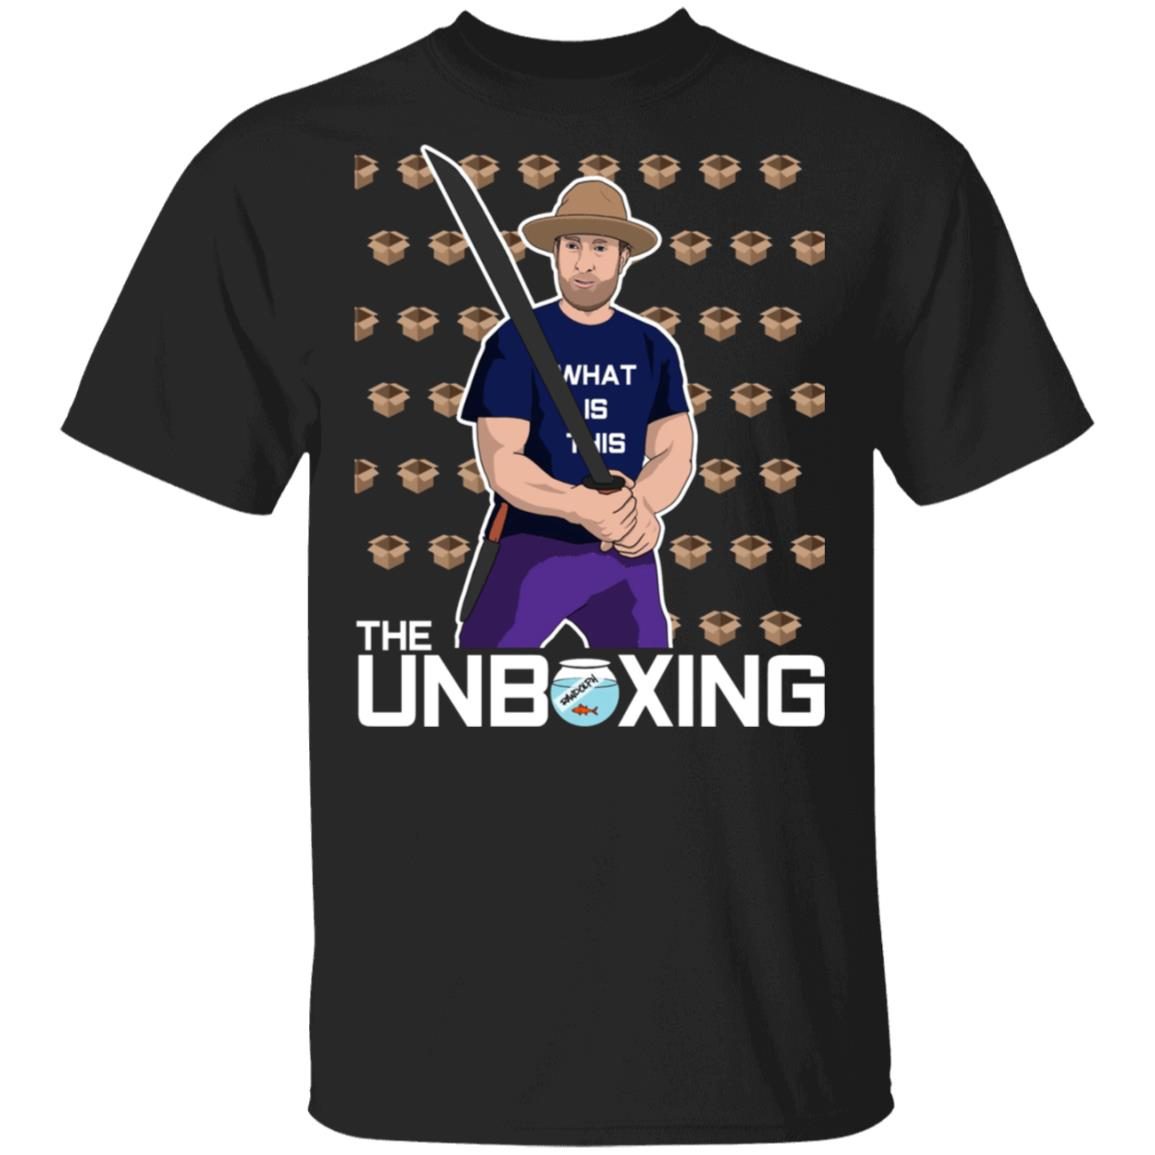 Barstool Unboxing shirt